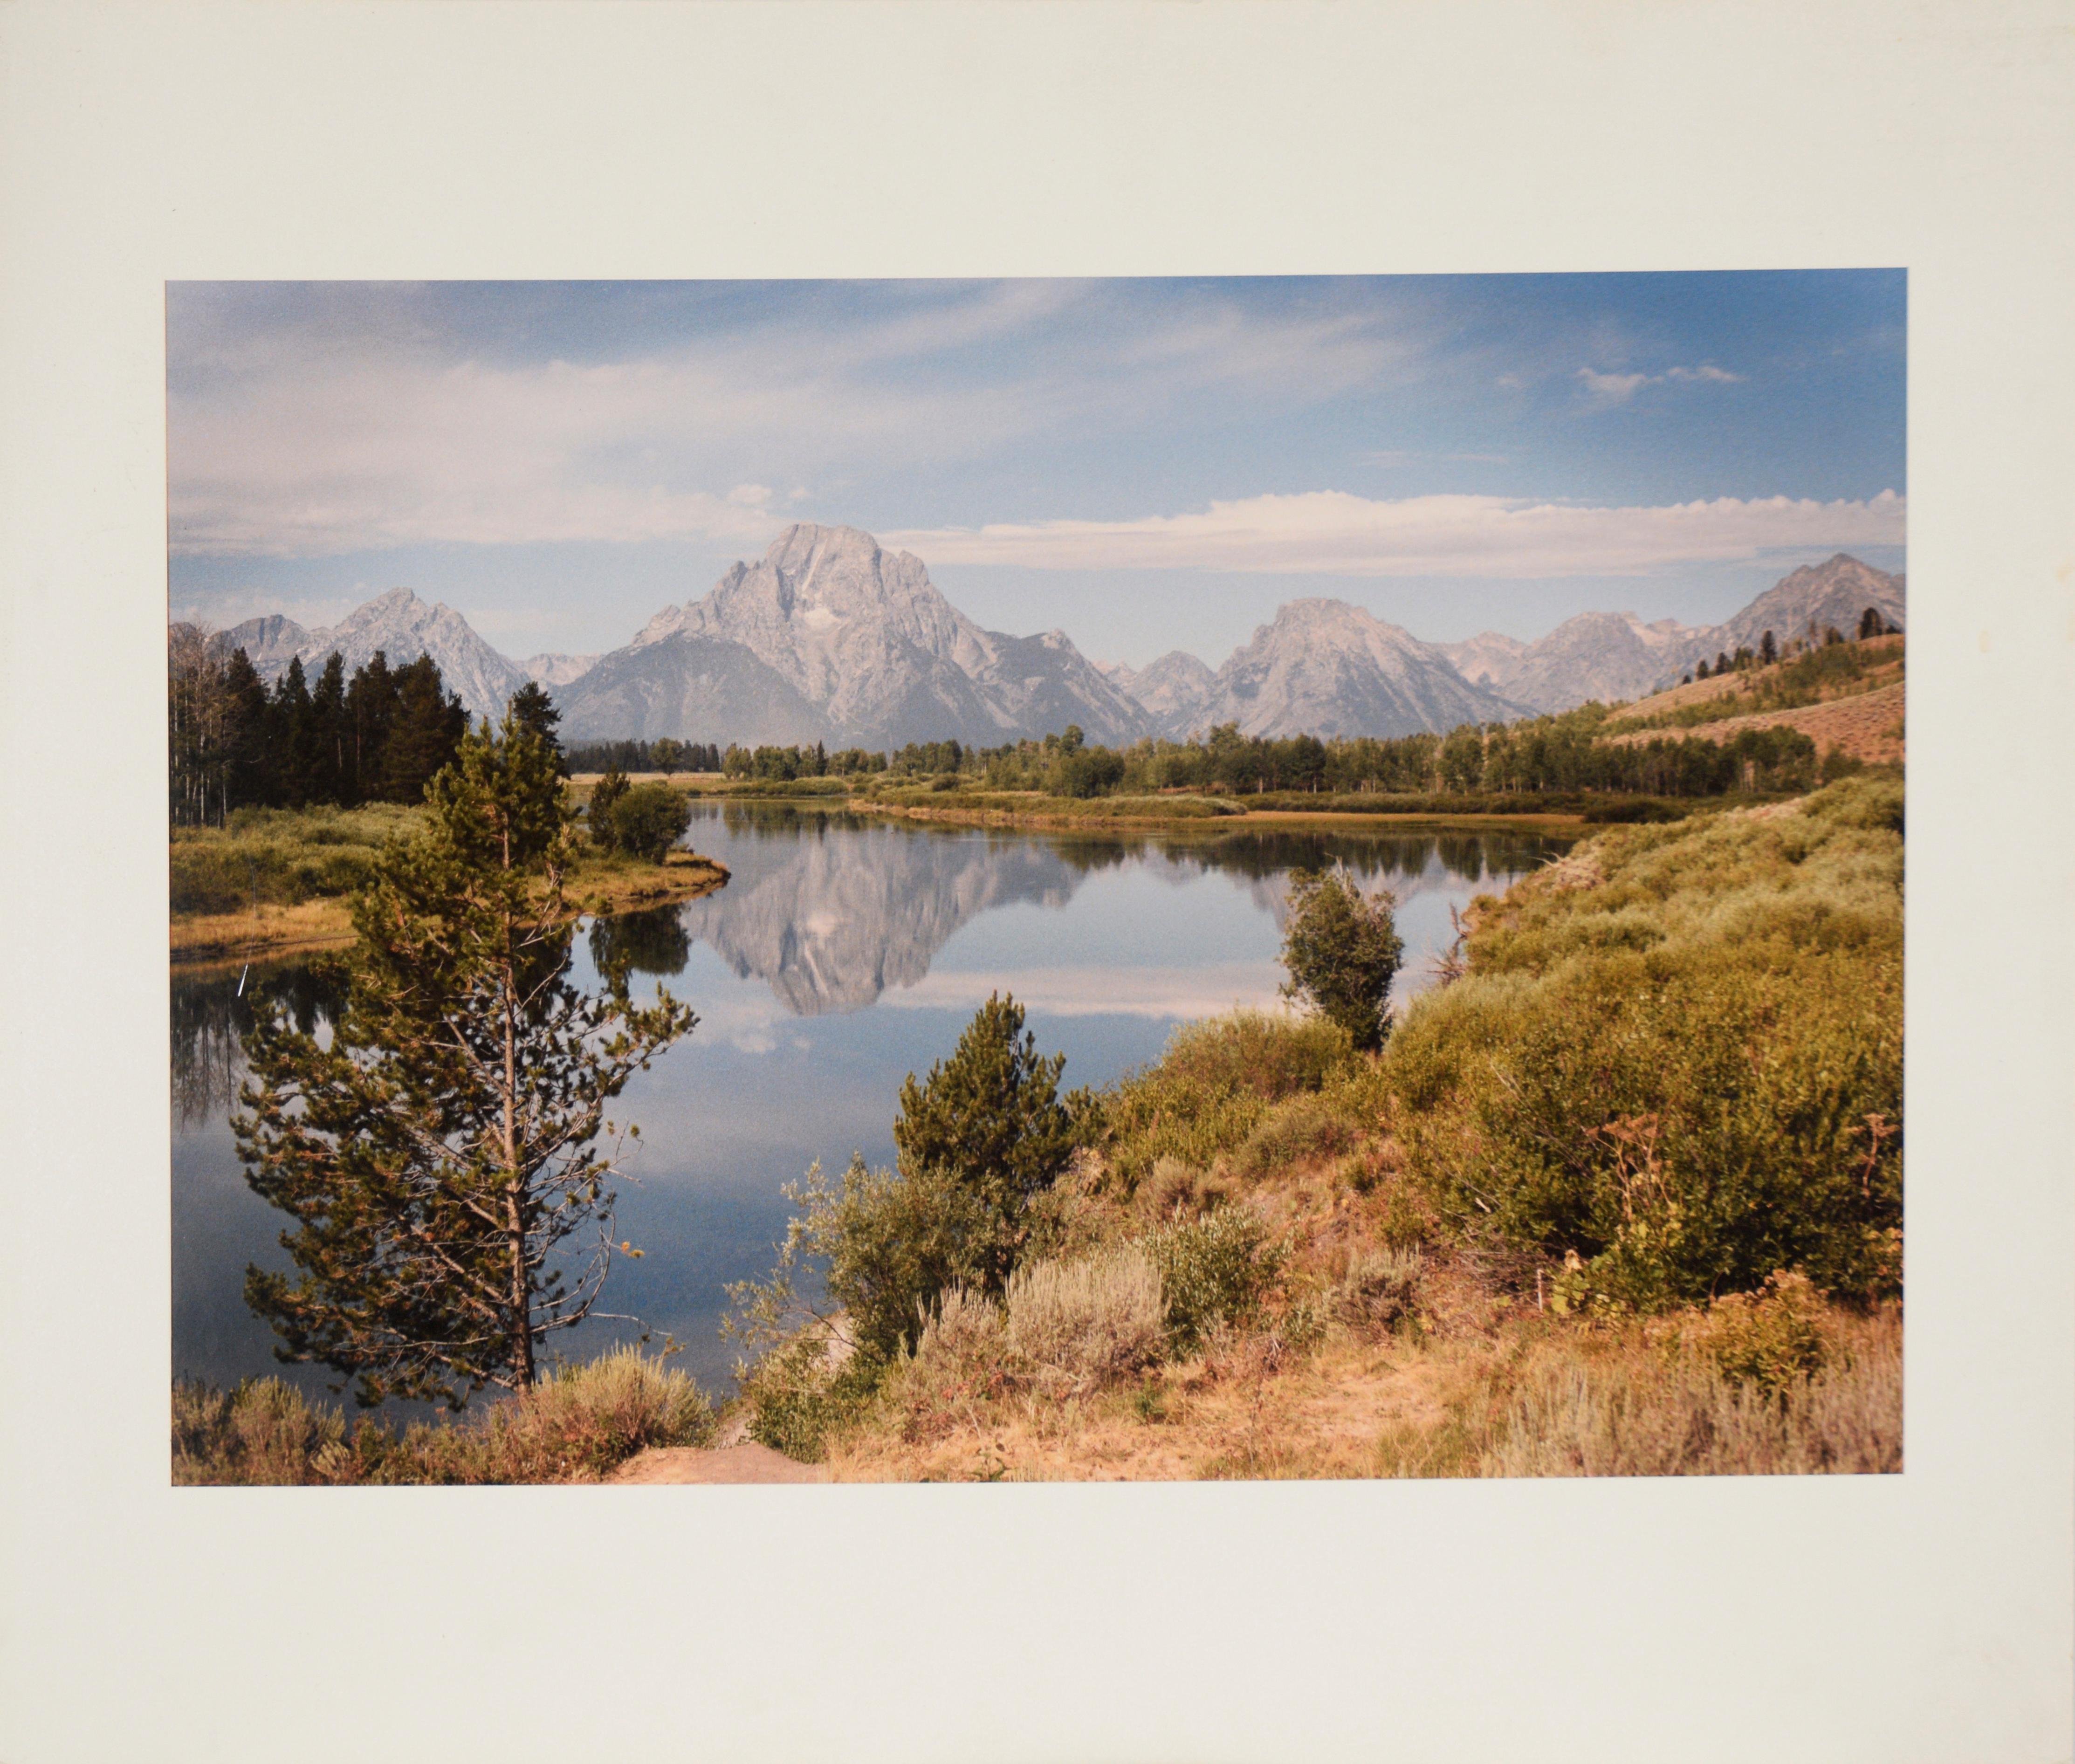 Landscape Photograph Unknown - Grand Teton National Park - Photographie originale de 1988